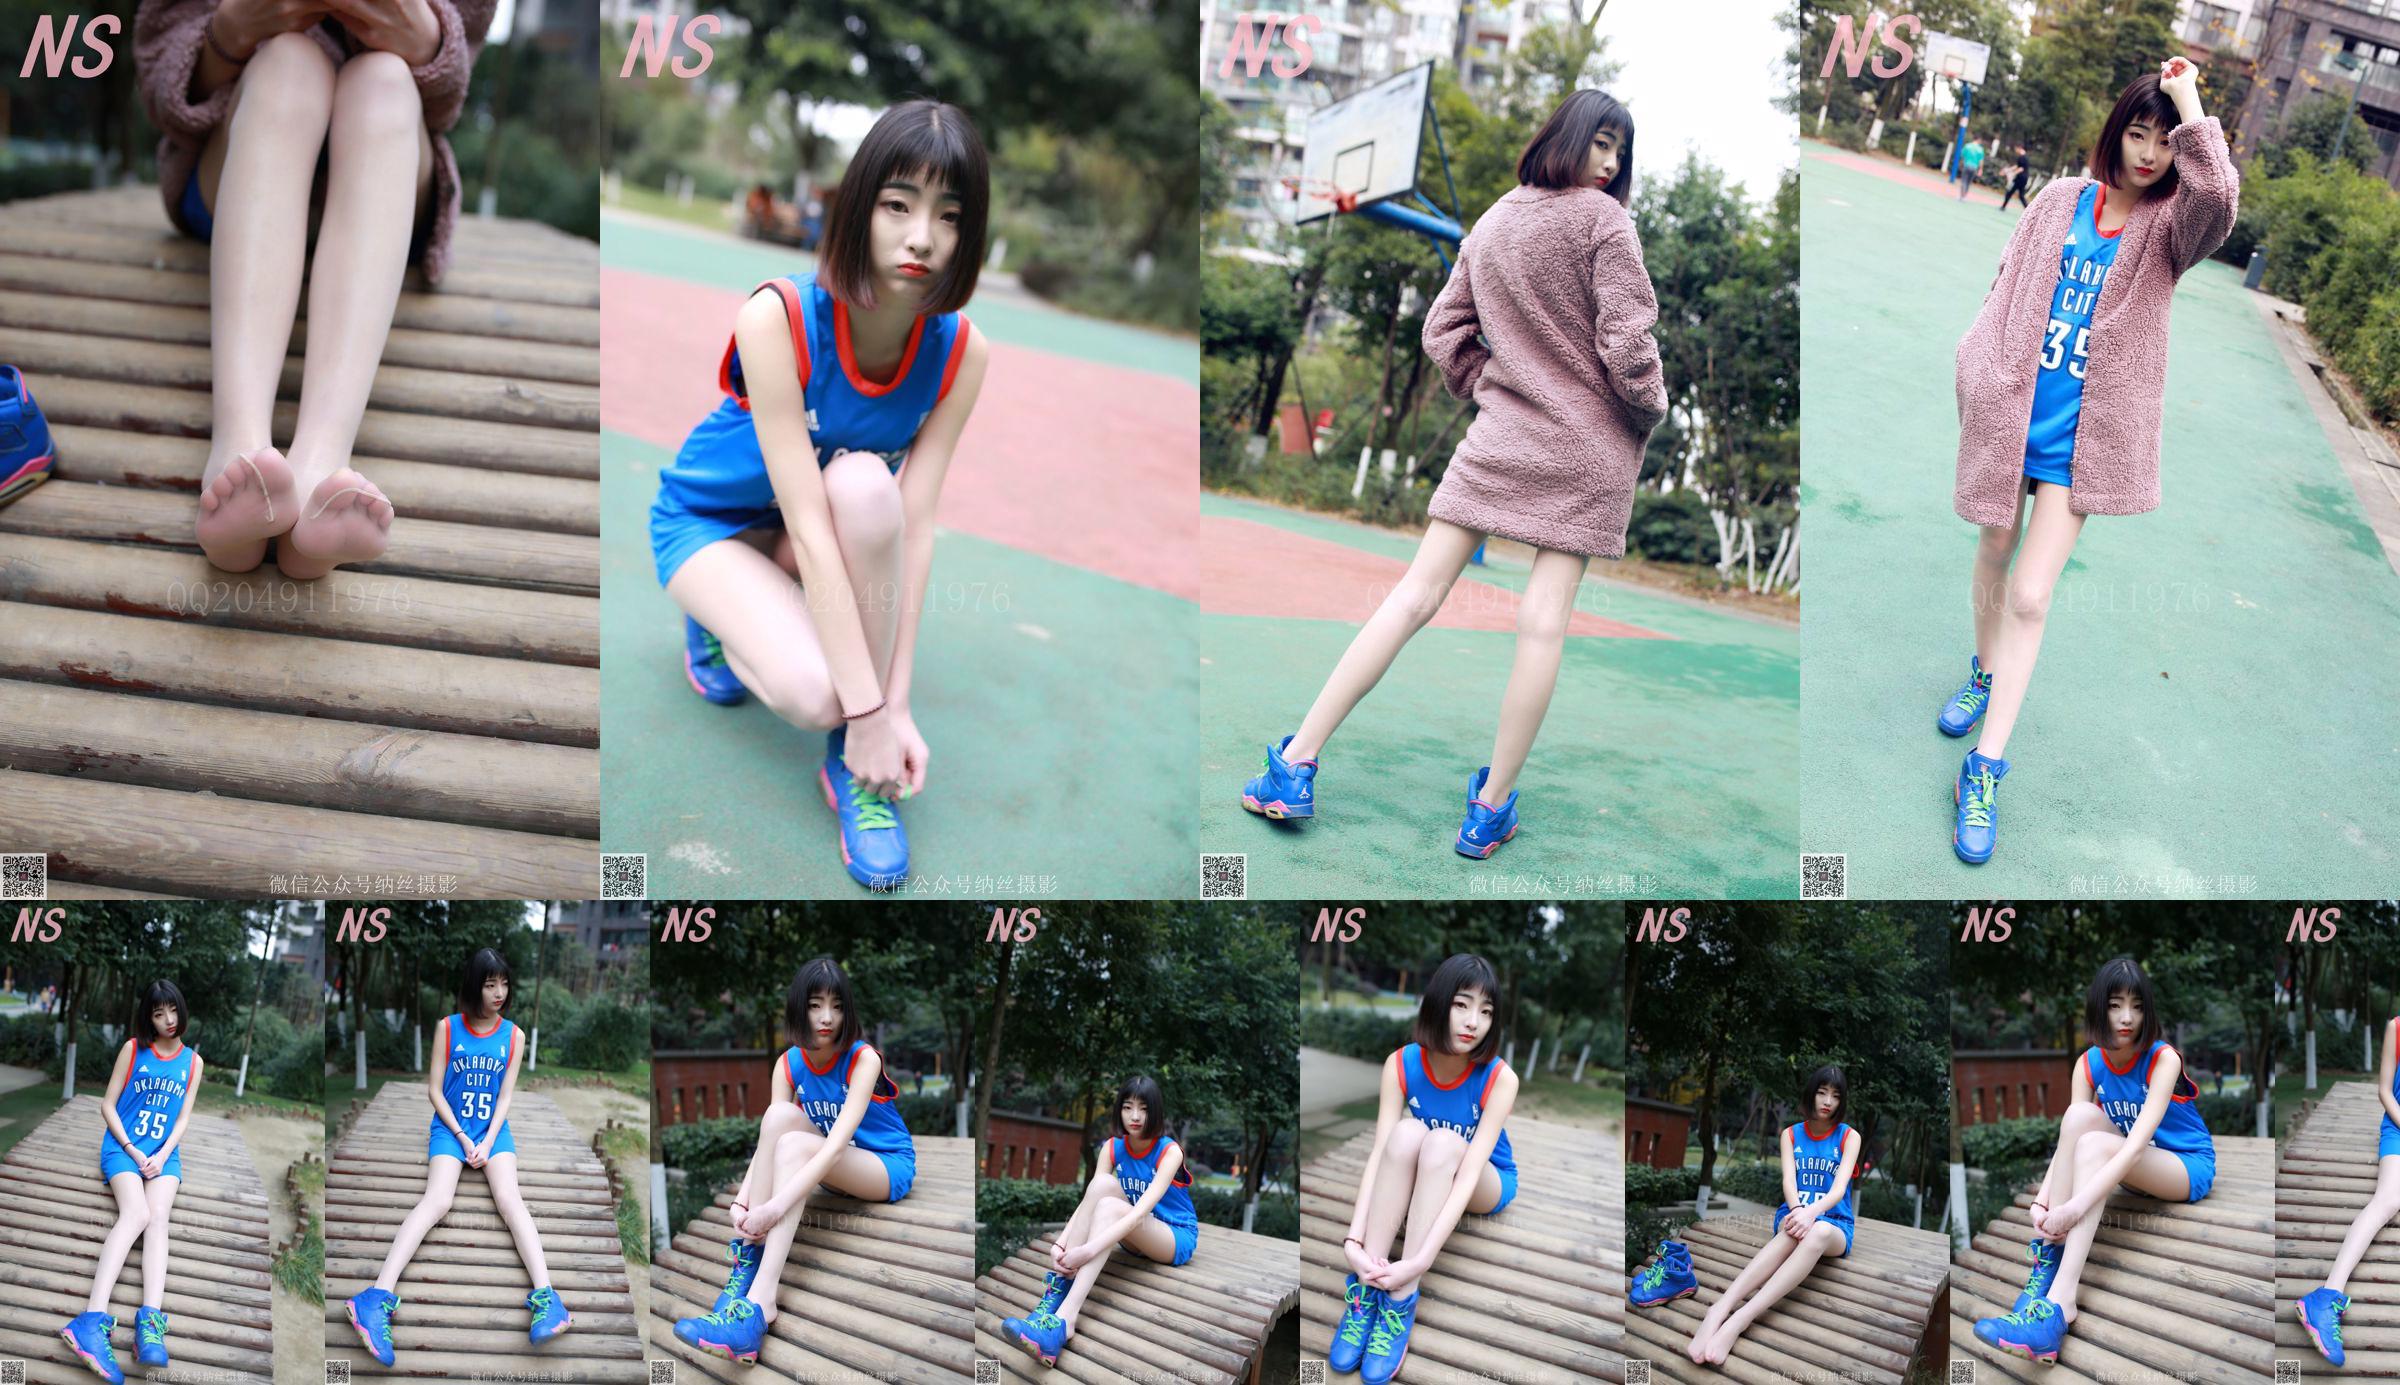 Chen Yujie "Basketball Girl" [Nasi Photography] SỐ 107 No.f95320 Trang 1